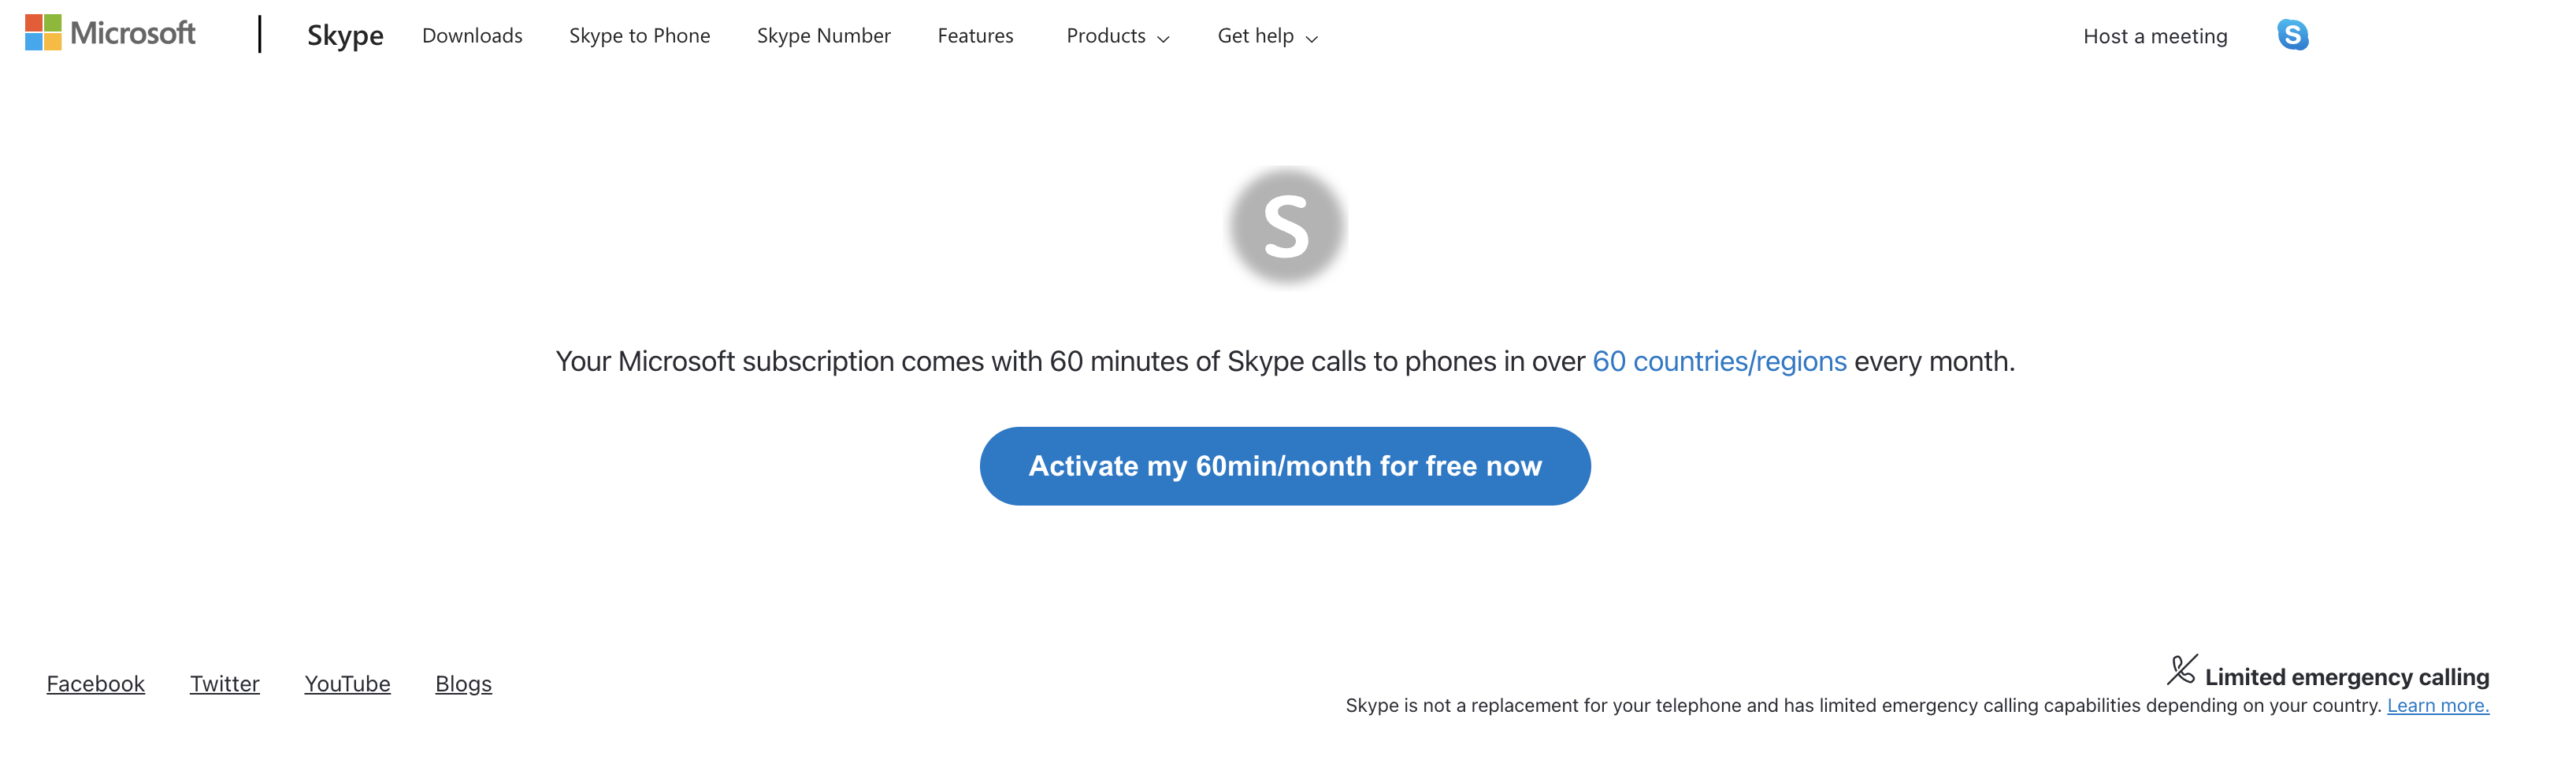 Webpagina om gratis 60 minuten te activeren met Skype